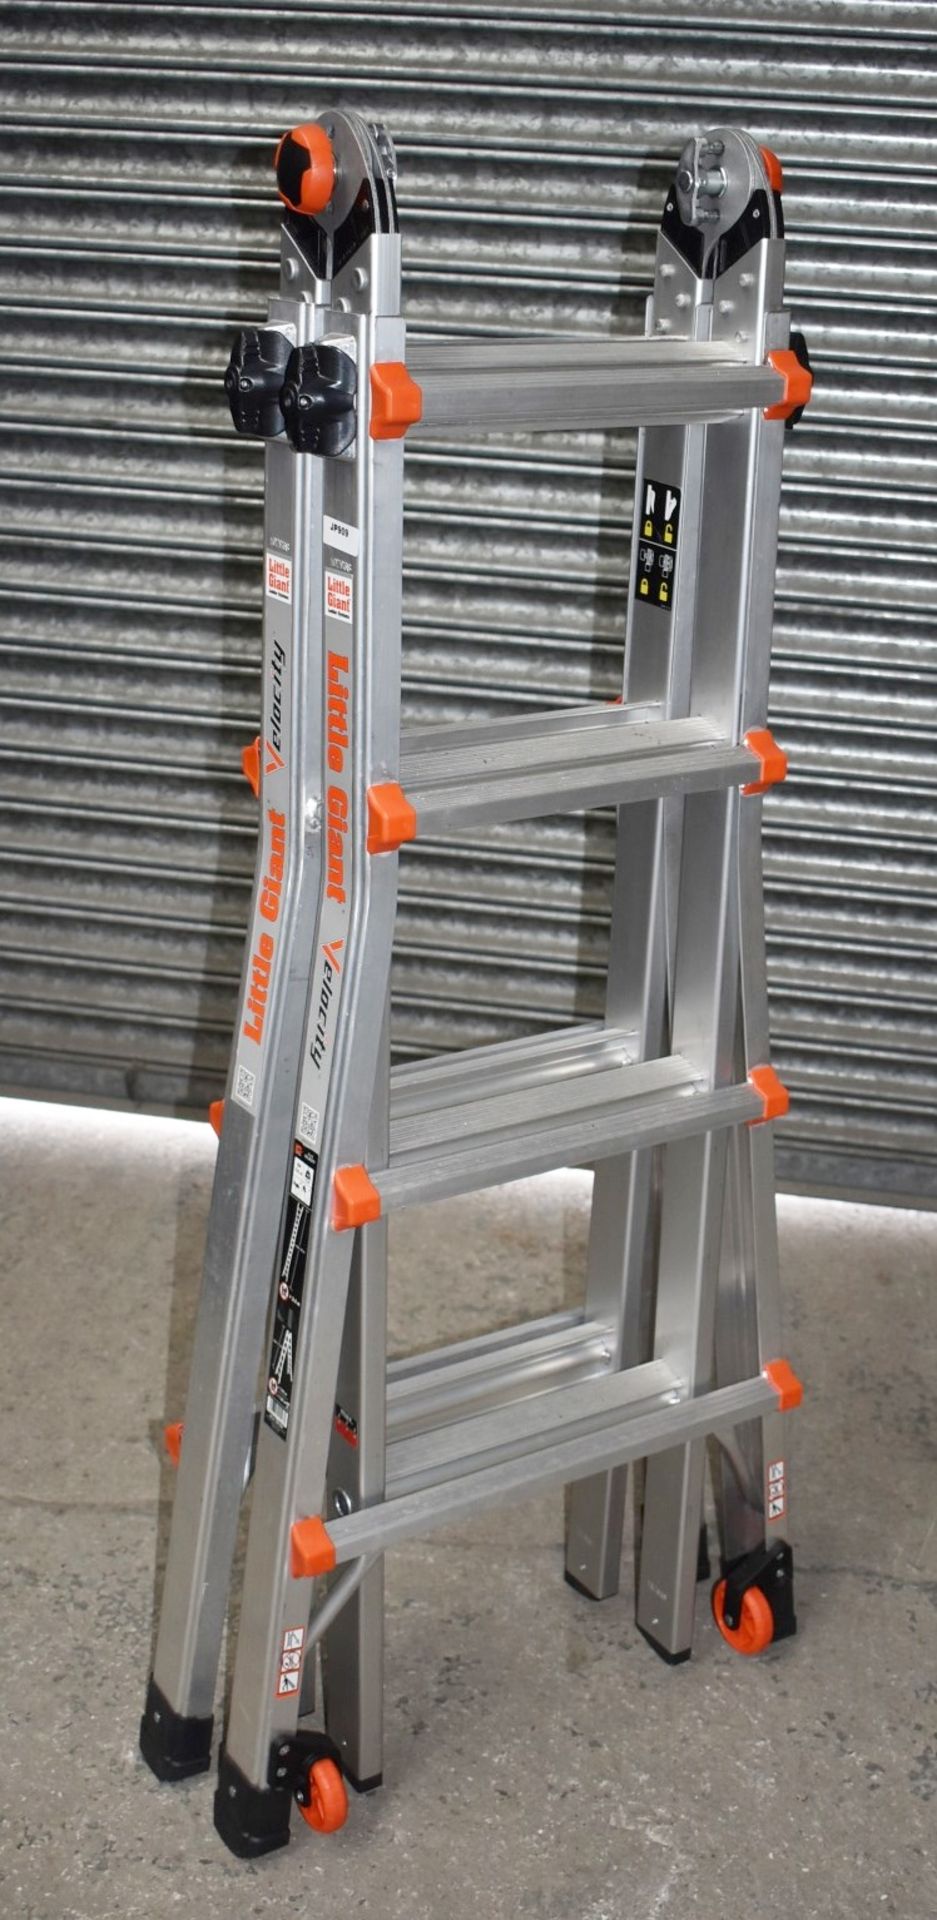 1 x Little Giant 4 Step Multipurpose Velocity Ladder - Type 15417EN - Ref: JP909 GITW - CL732 - - Image 8 of 15